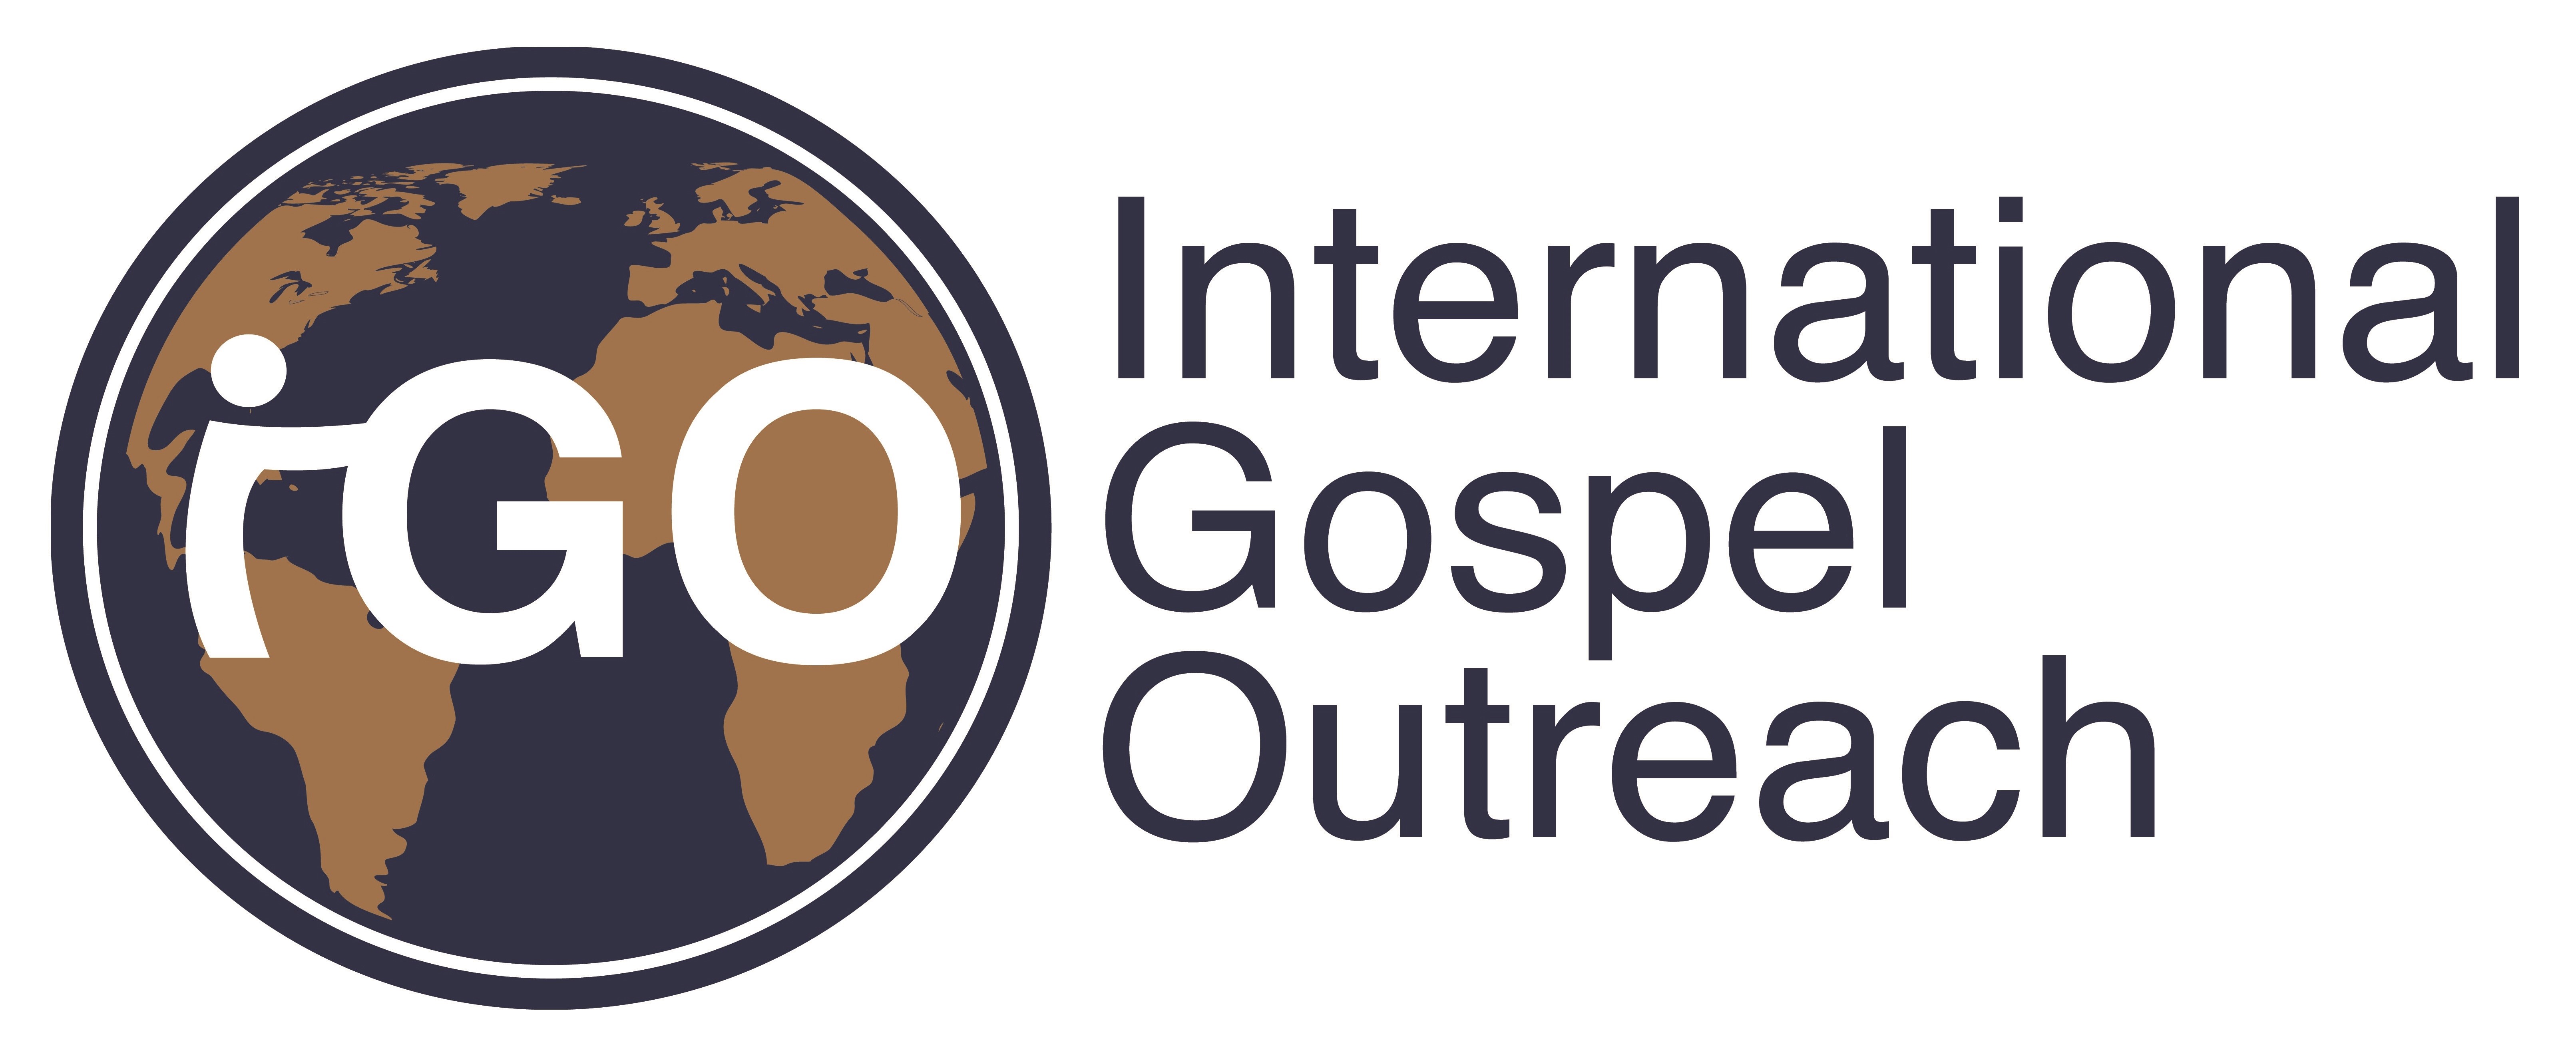 International Gospel Outreach logo